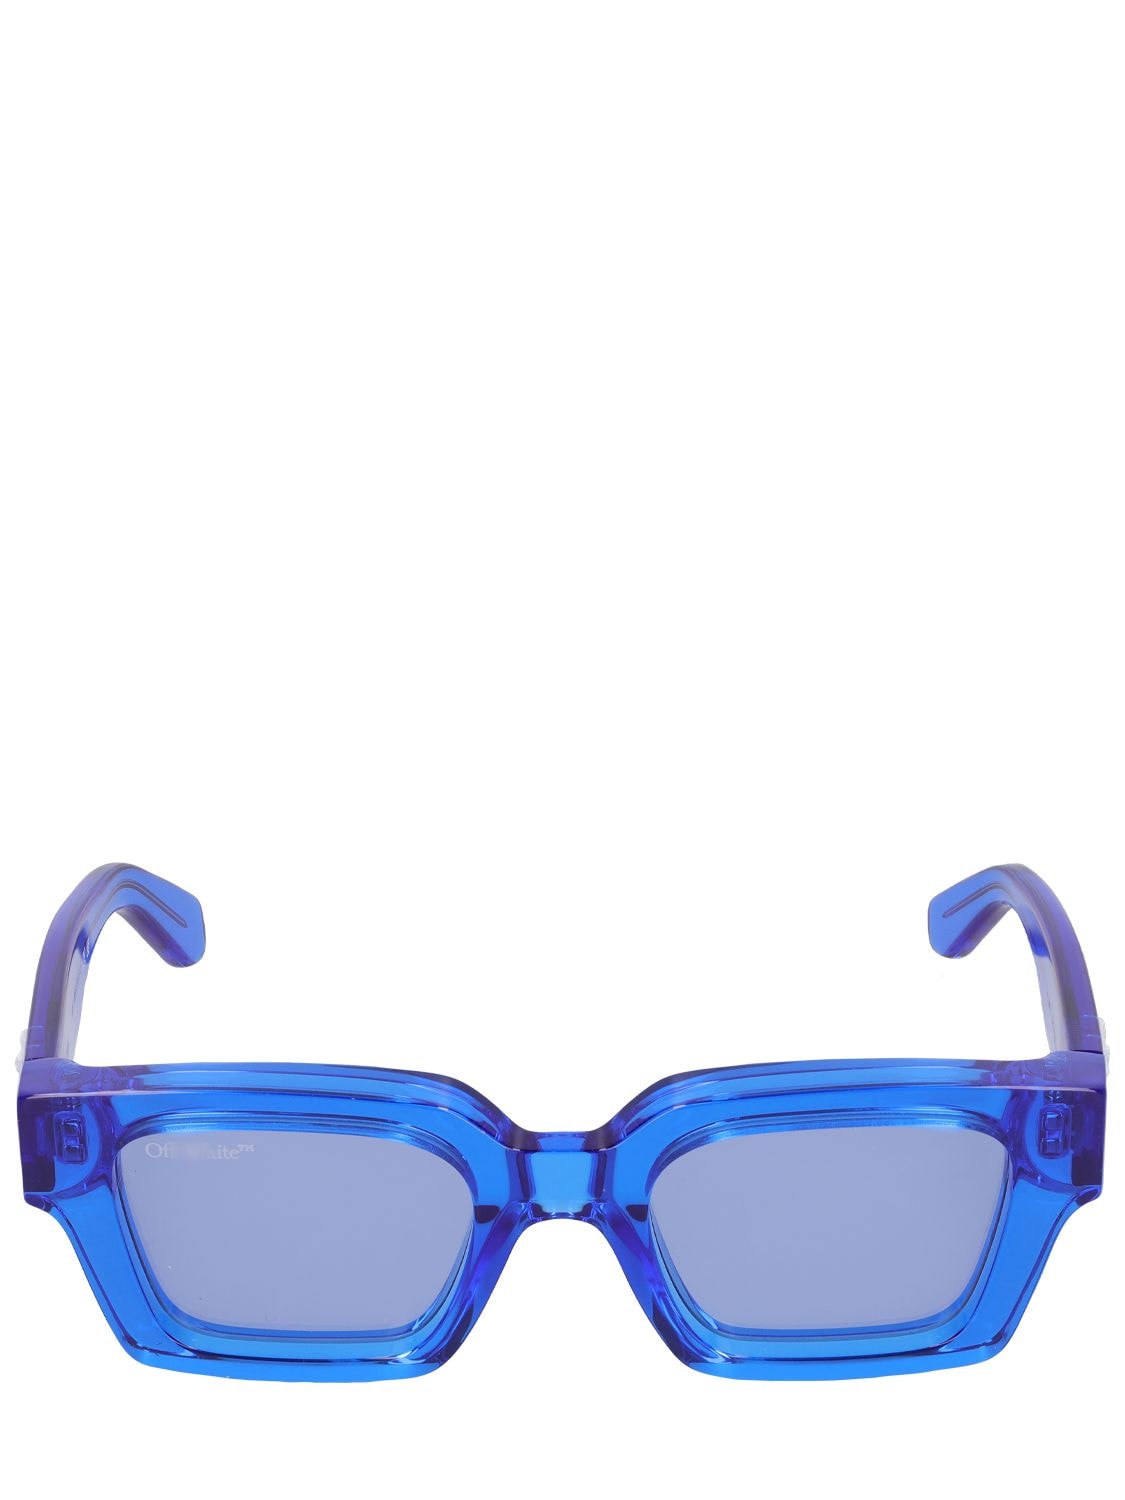 Off-White c/o Virgil Abloh Virgil Square Frame Sunglasses in Blue